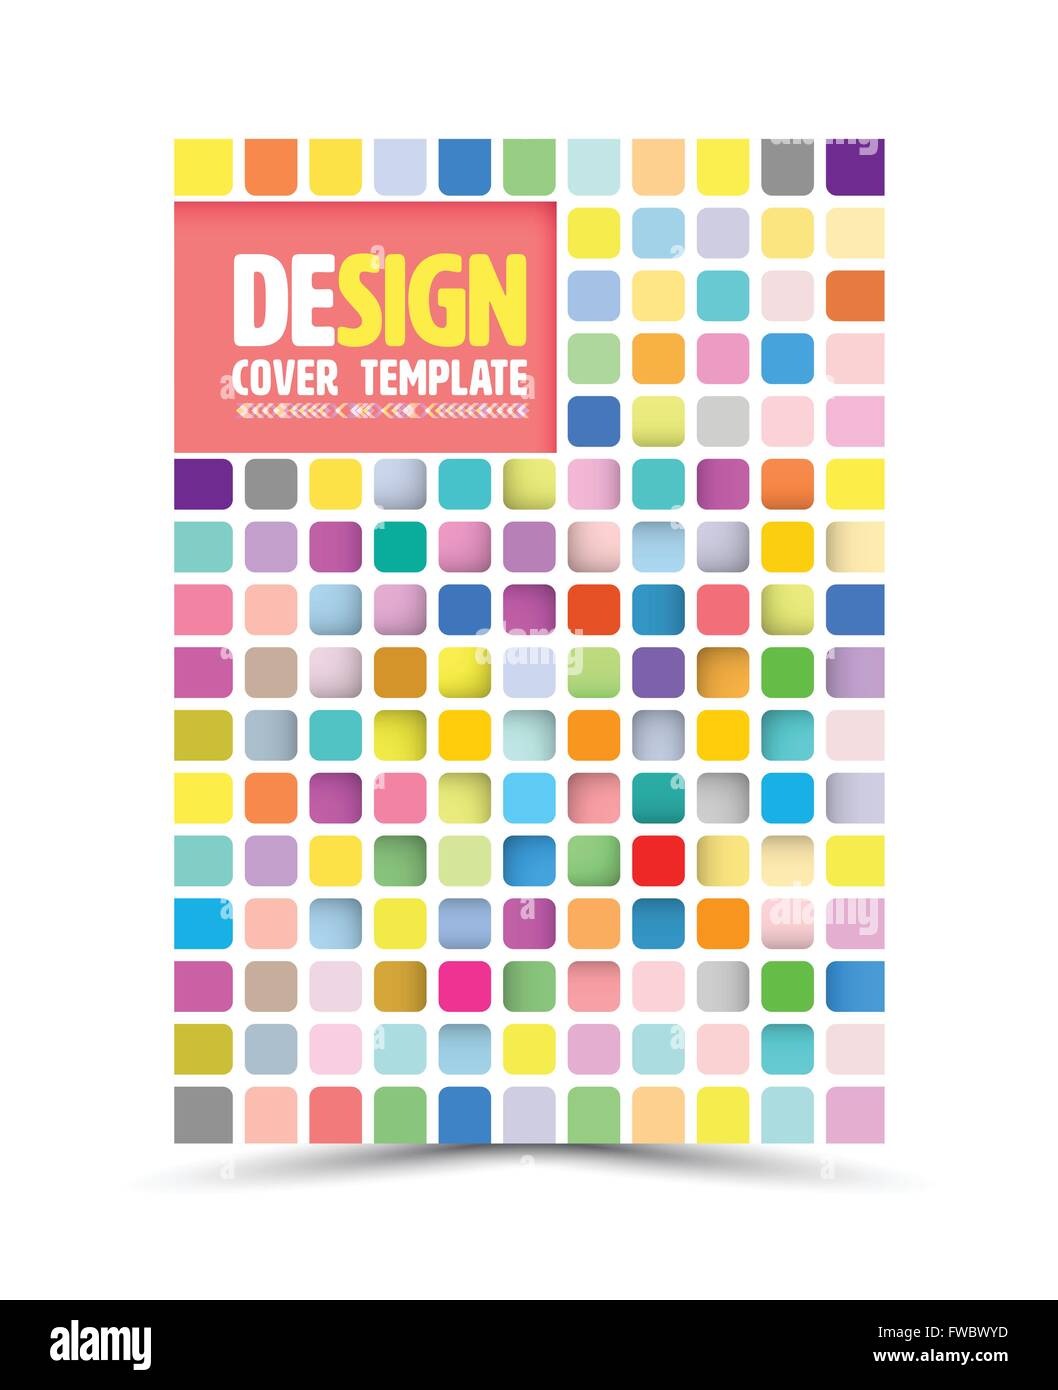 Vektor Buch-Cover-Design-Vorlage, Flyer-Layout, Magazin-Cover & Plakat Vorlage. Vektor-Illustration. Können für den Druck und Stock Vektor